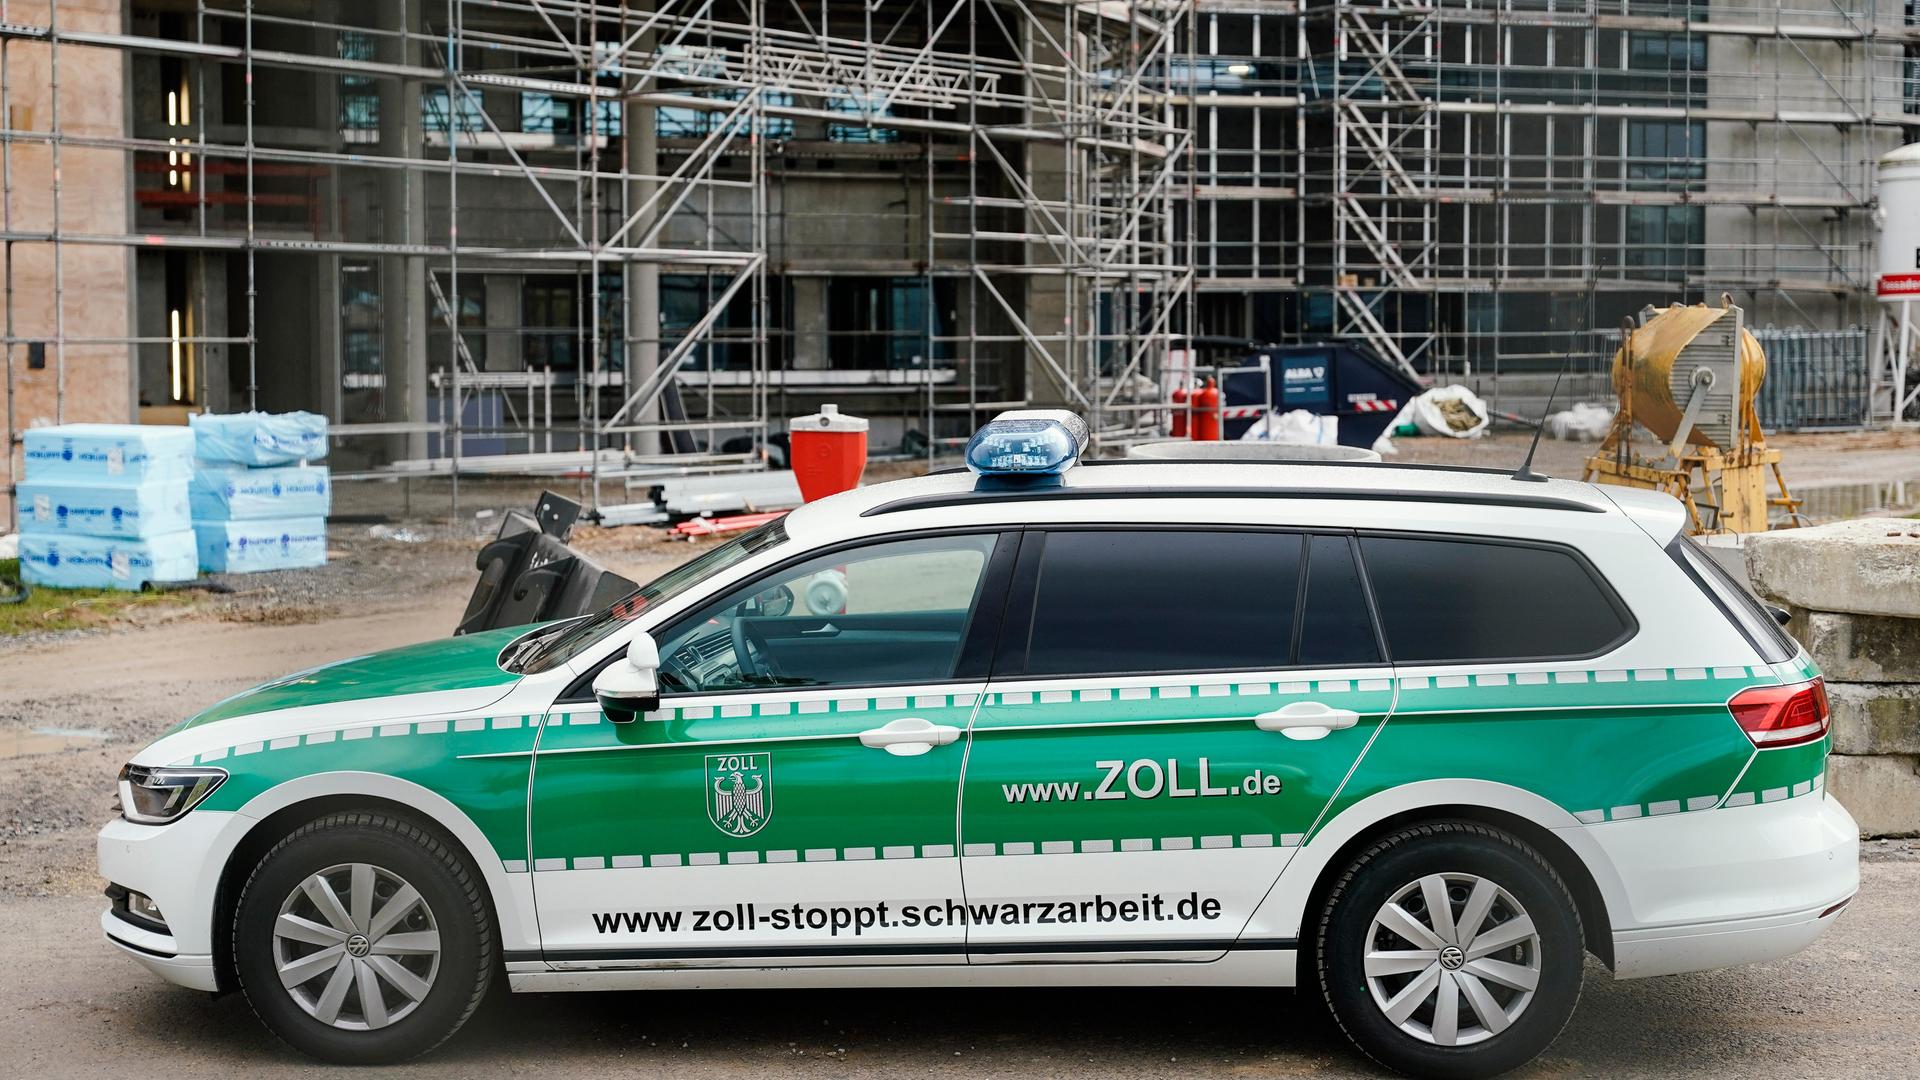 Ein Einsatzfahrzeug des Zolls mit der Aufschrift www.zoll-stoppt.schwarzarbeit.de steht bei einer Kontrolle des Hauptzollamts Karlsruhe im Bereich Schwarzarbeit auf einer Baustelle.